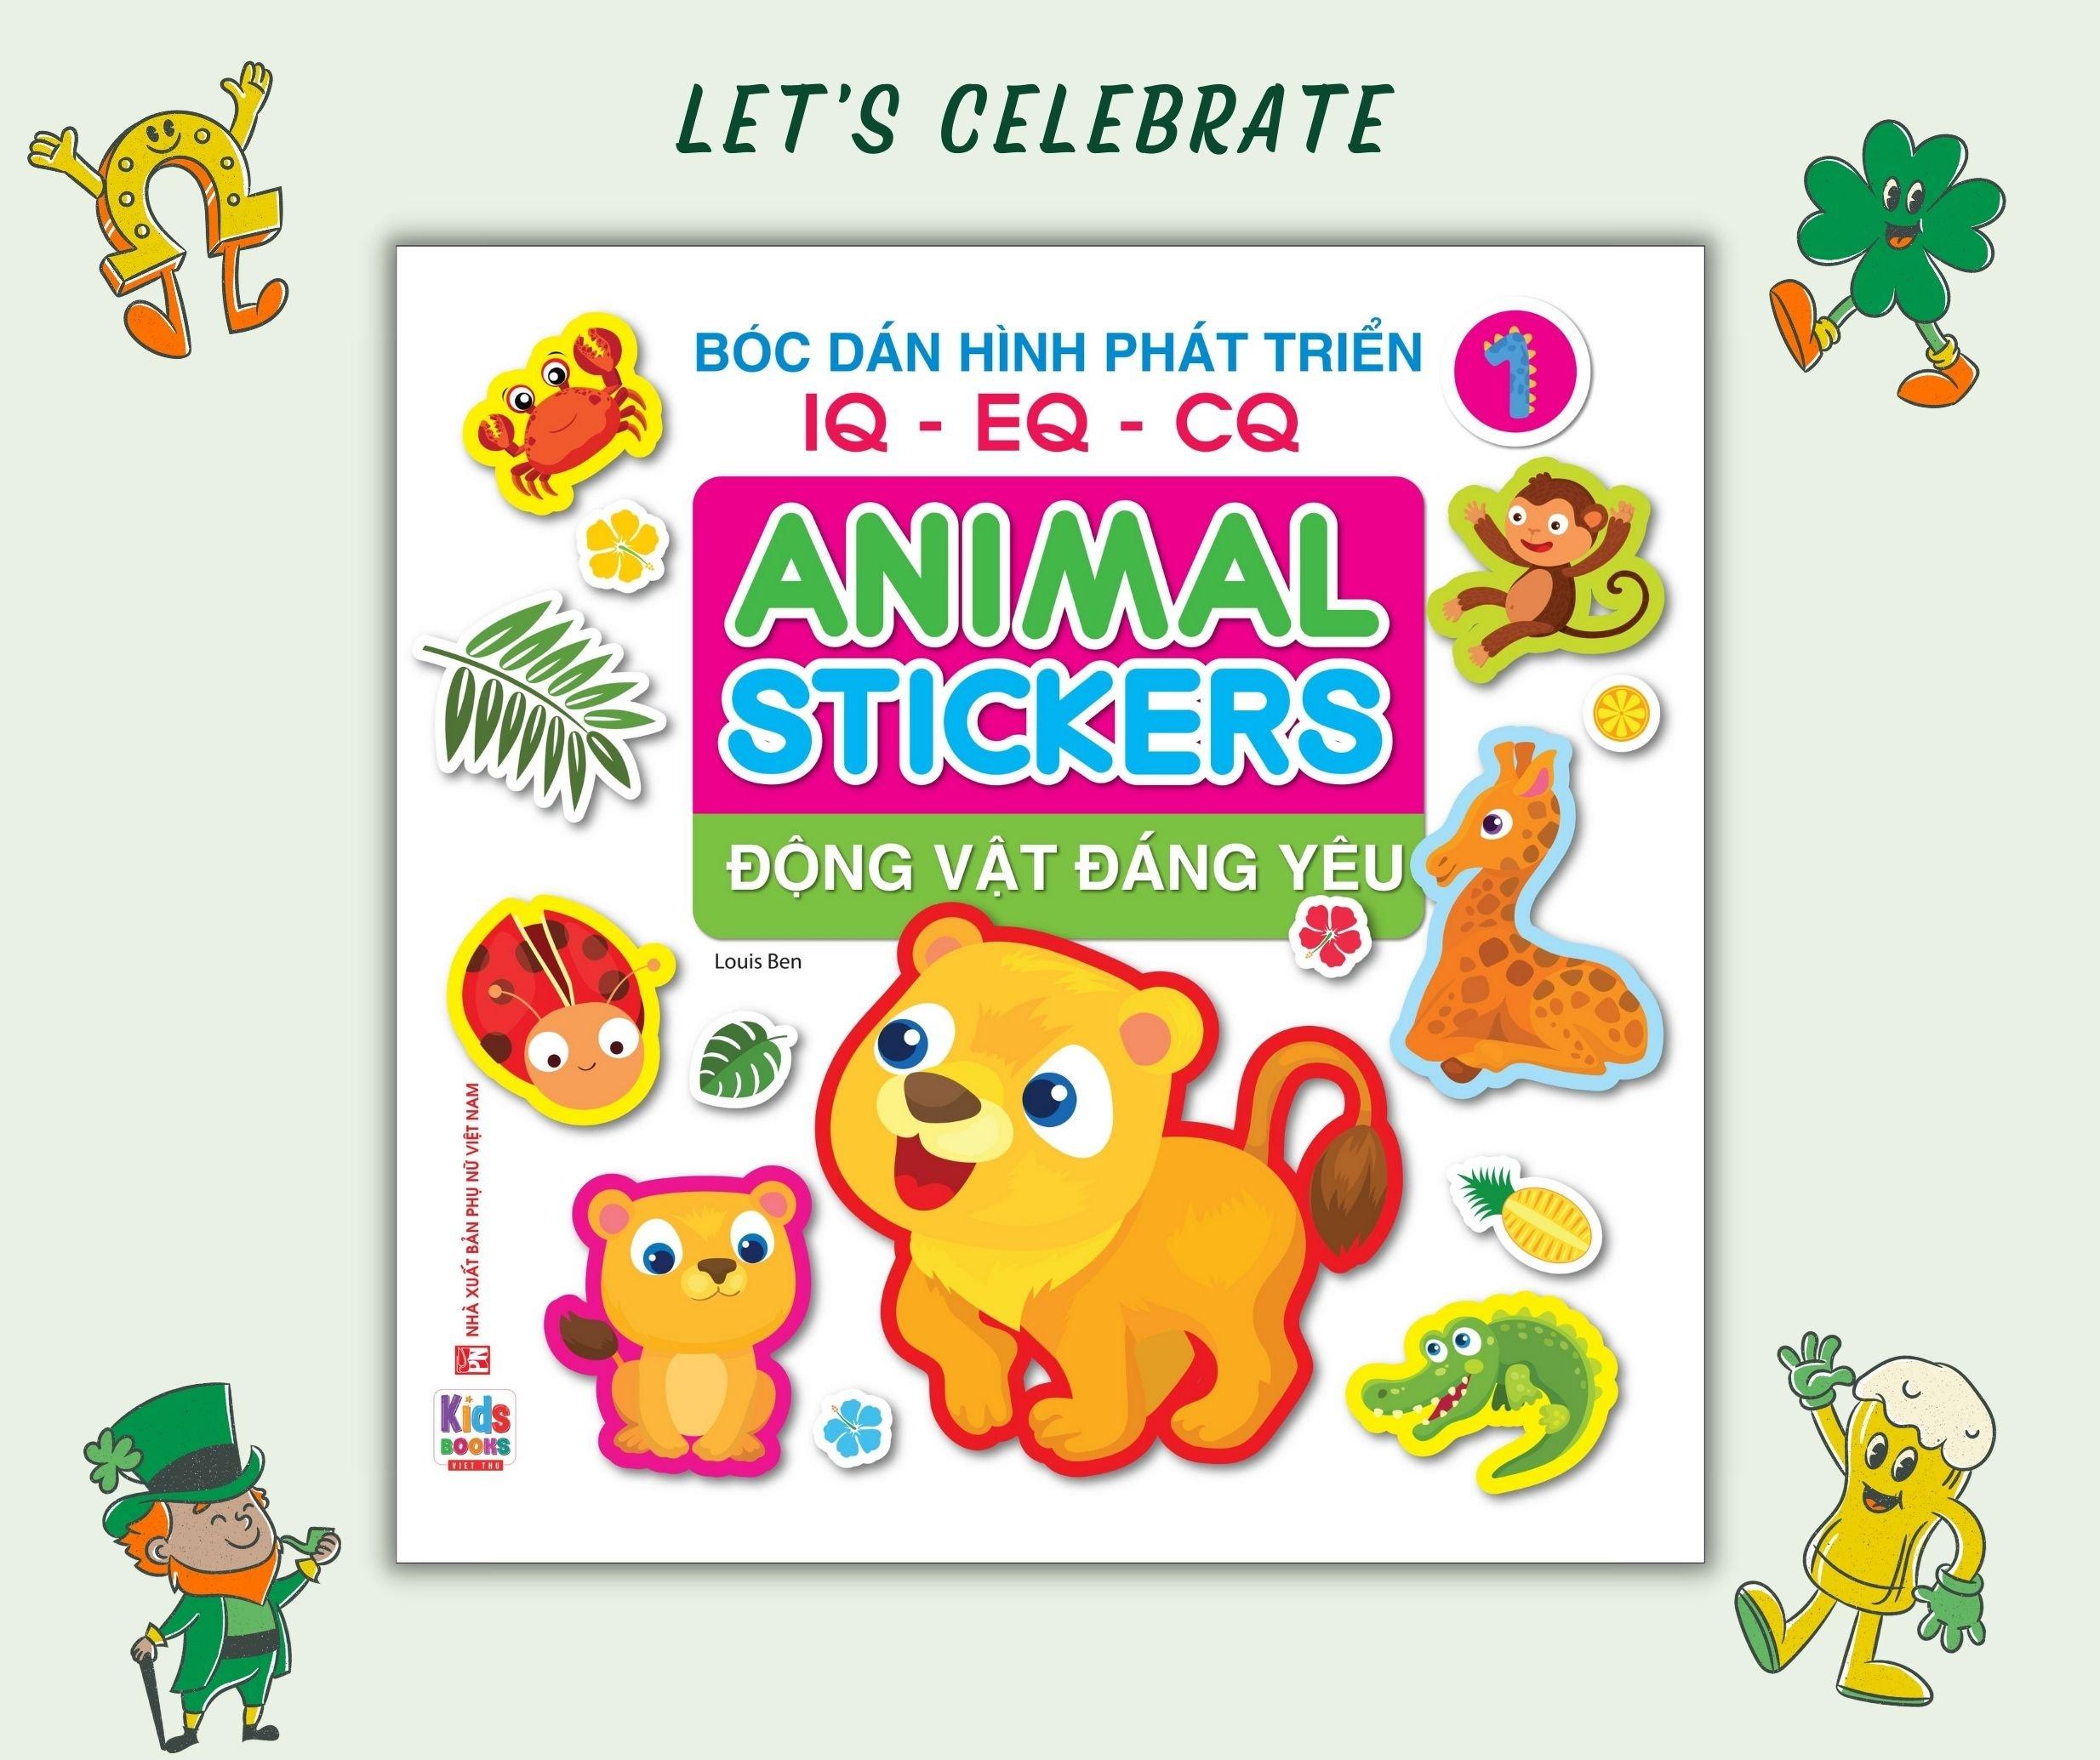 Sách - Bóc dán hình Động vật đáng yêu - Animal Stickers Tập 1 (VT) mk